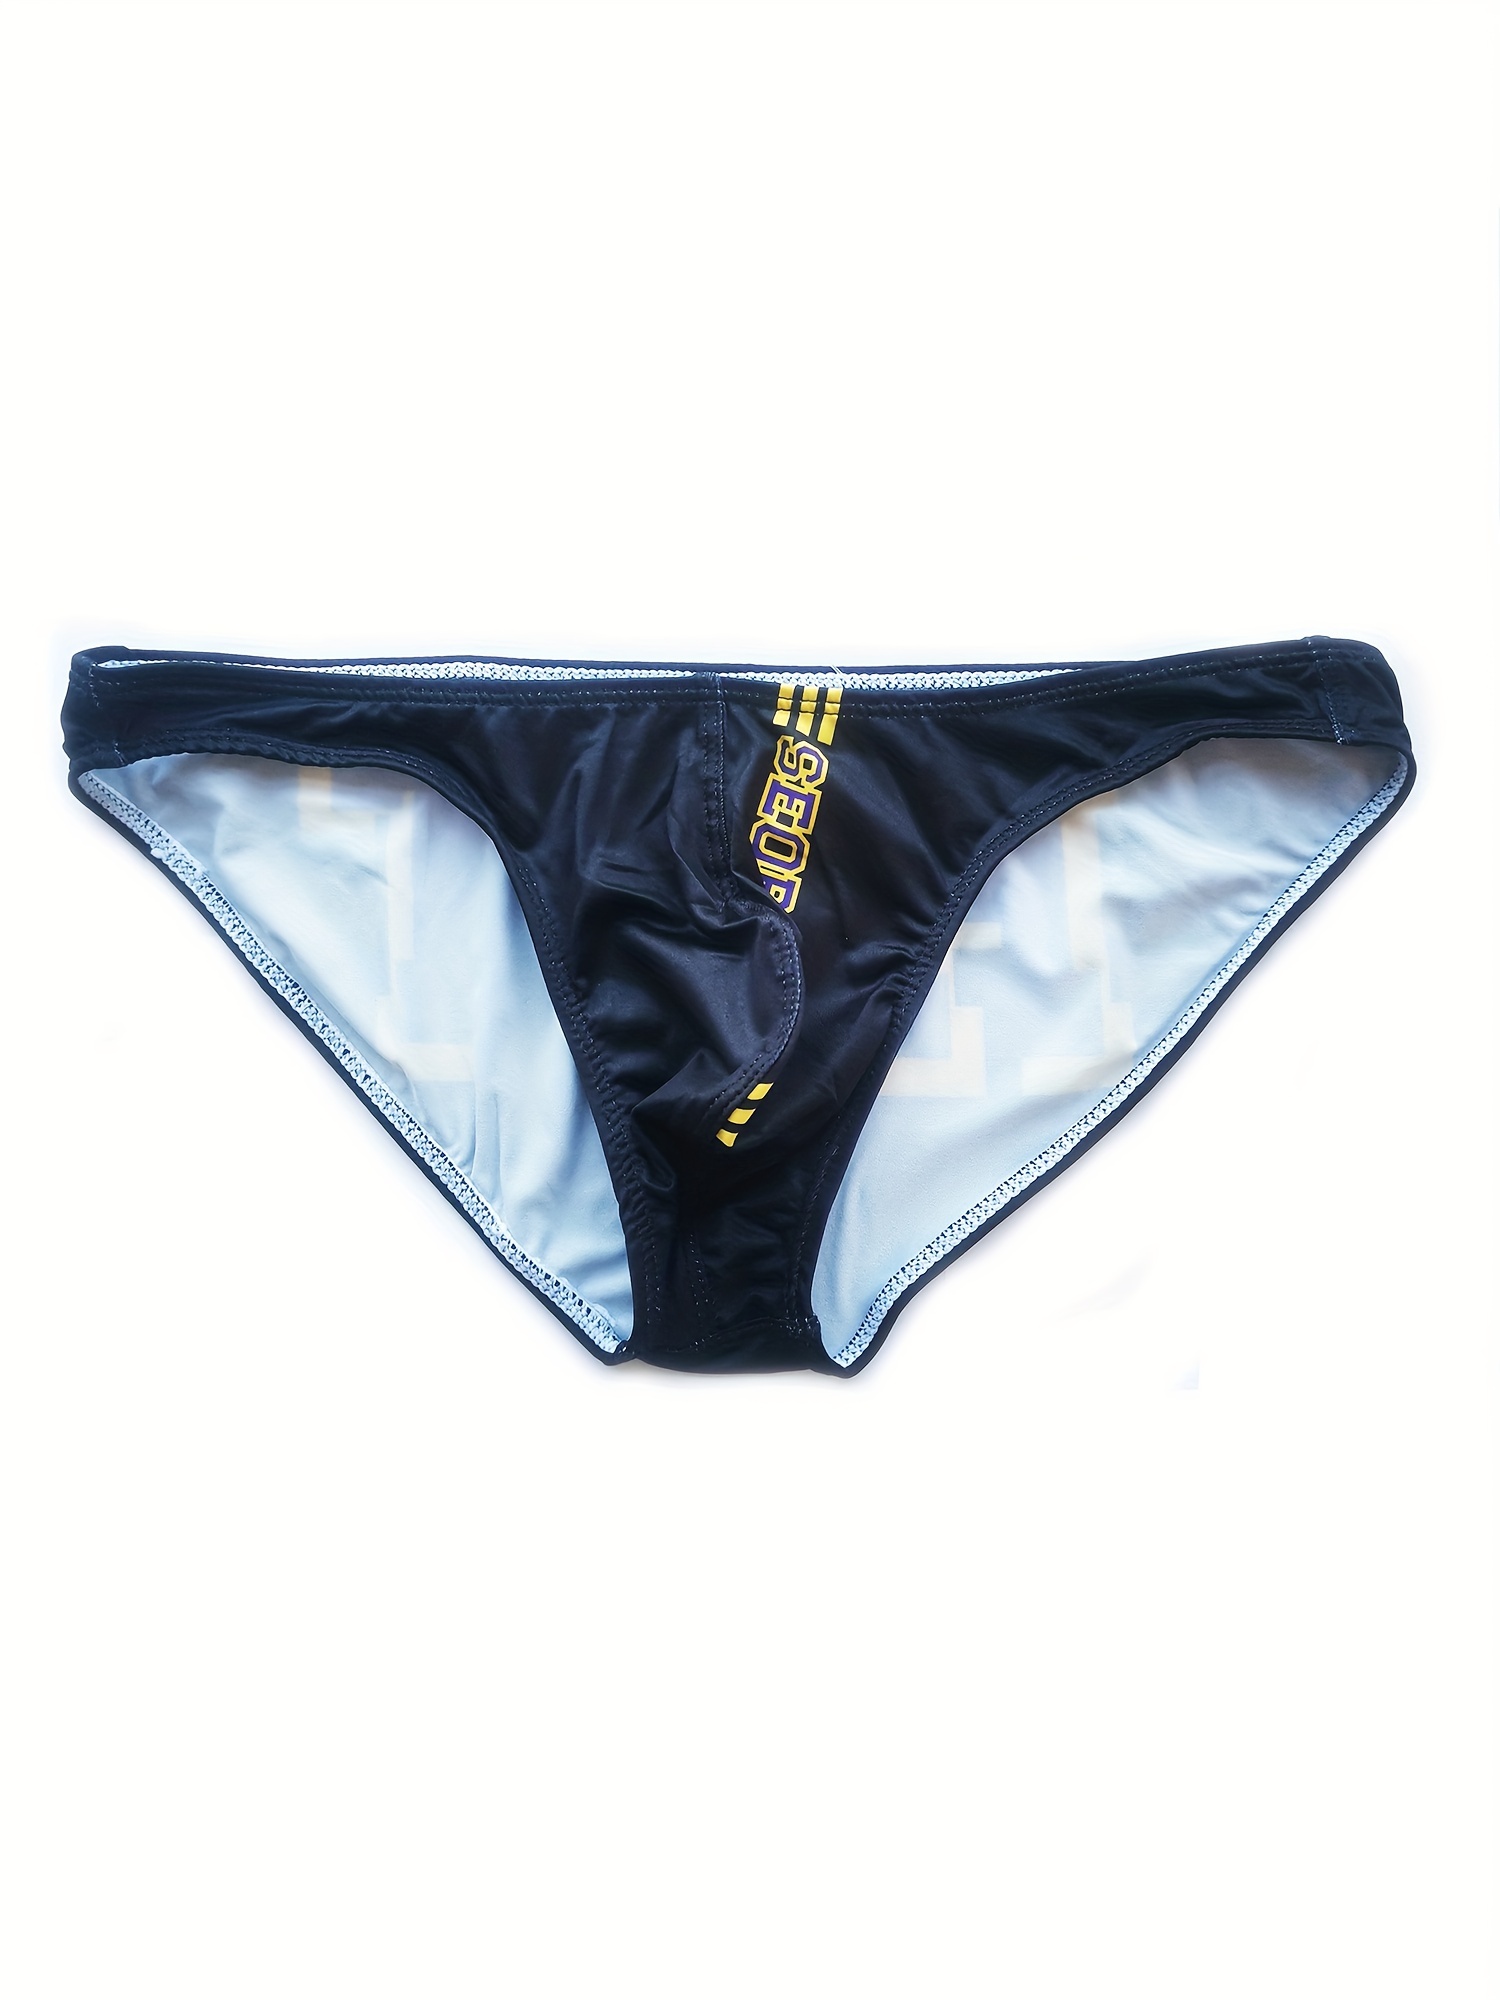 Men Briefs Mens Panties Underpants Thongs Underwear Breathable Ice Silk  Elastic